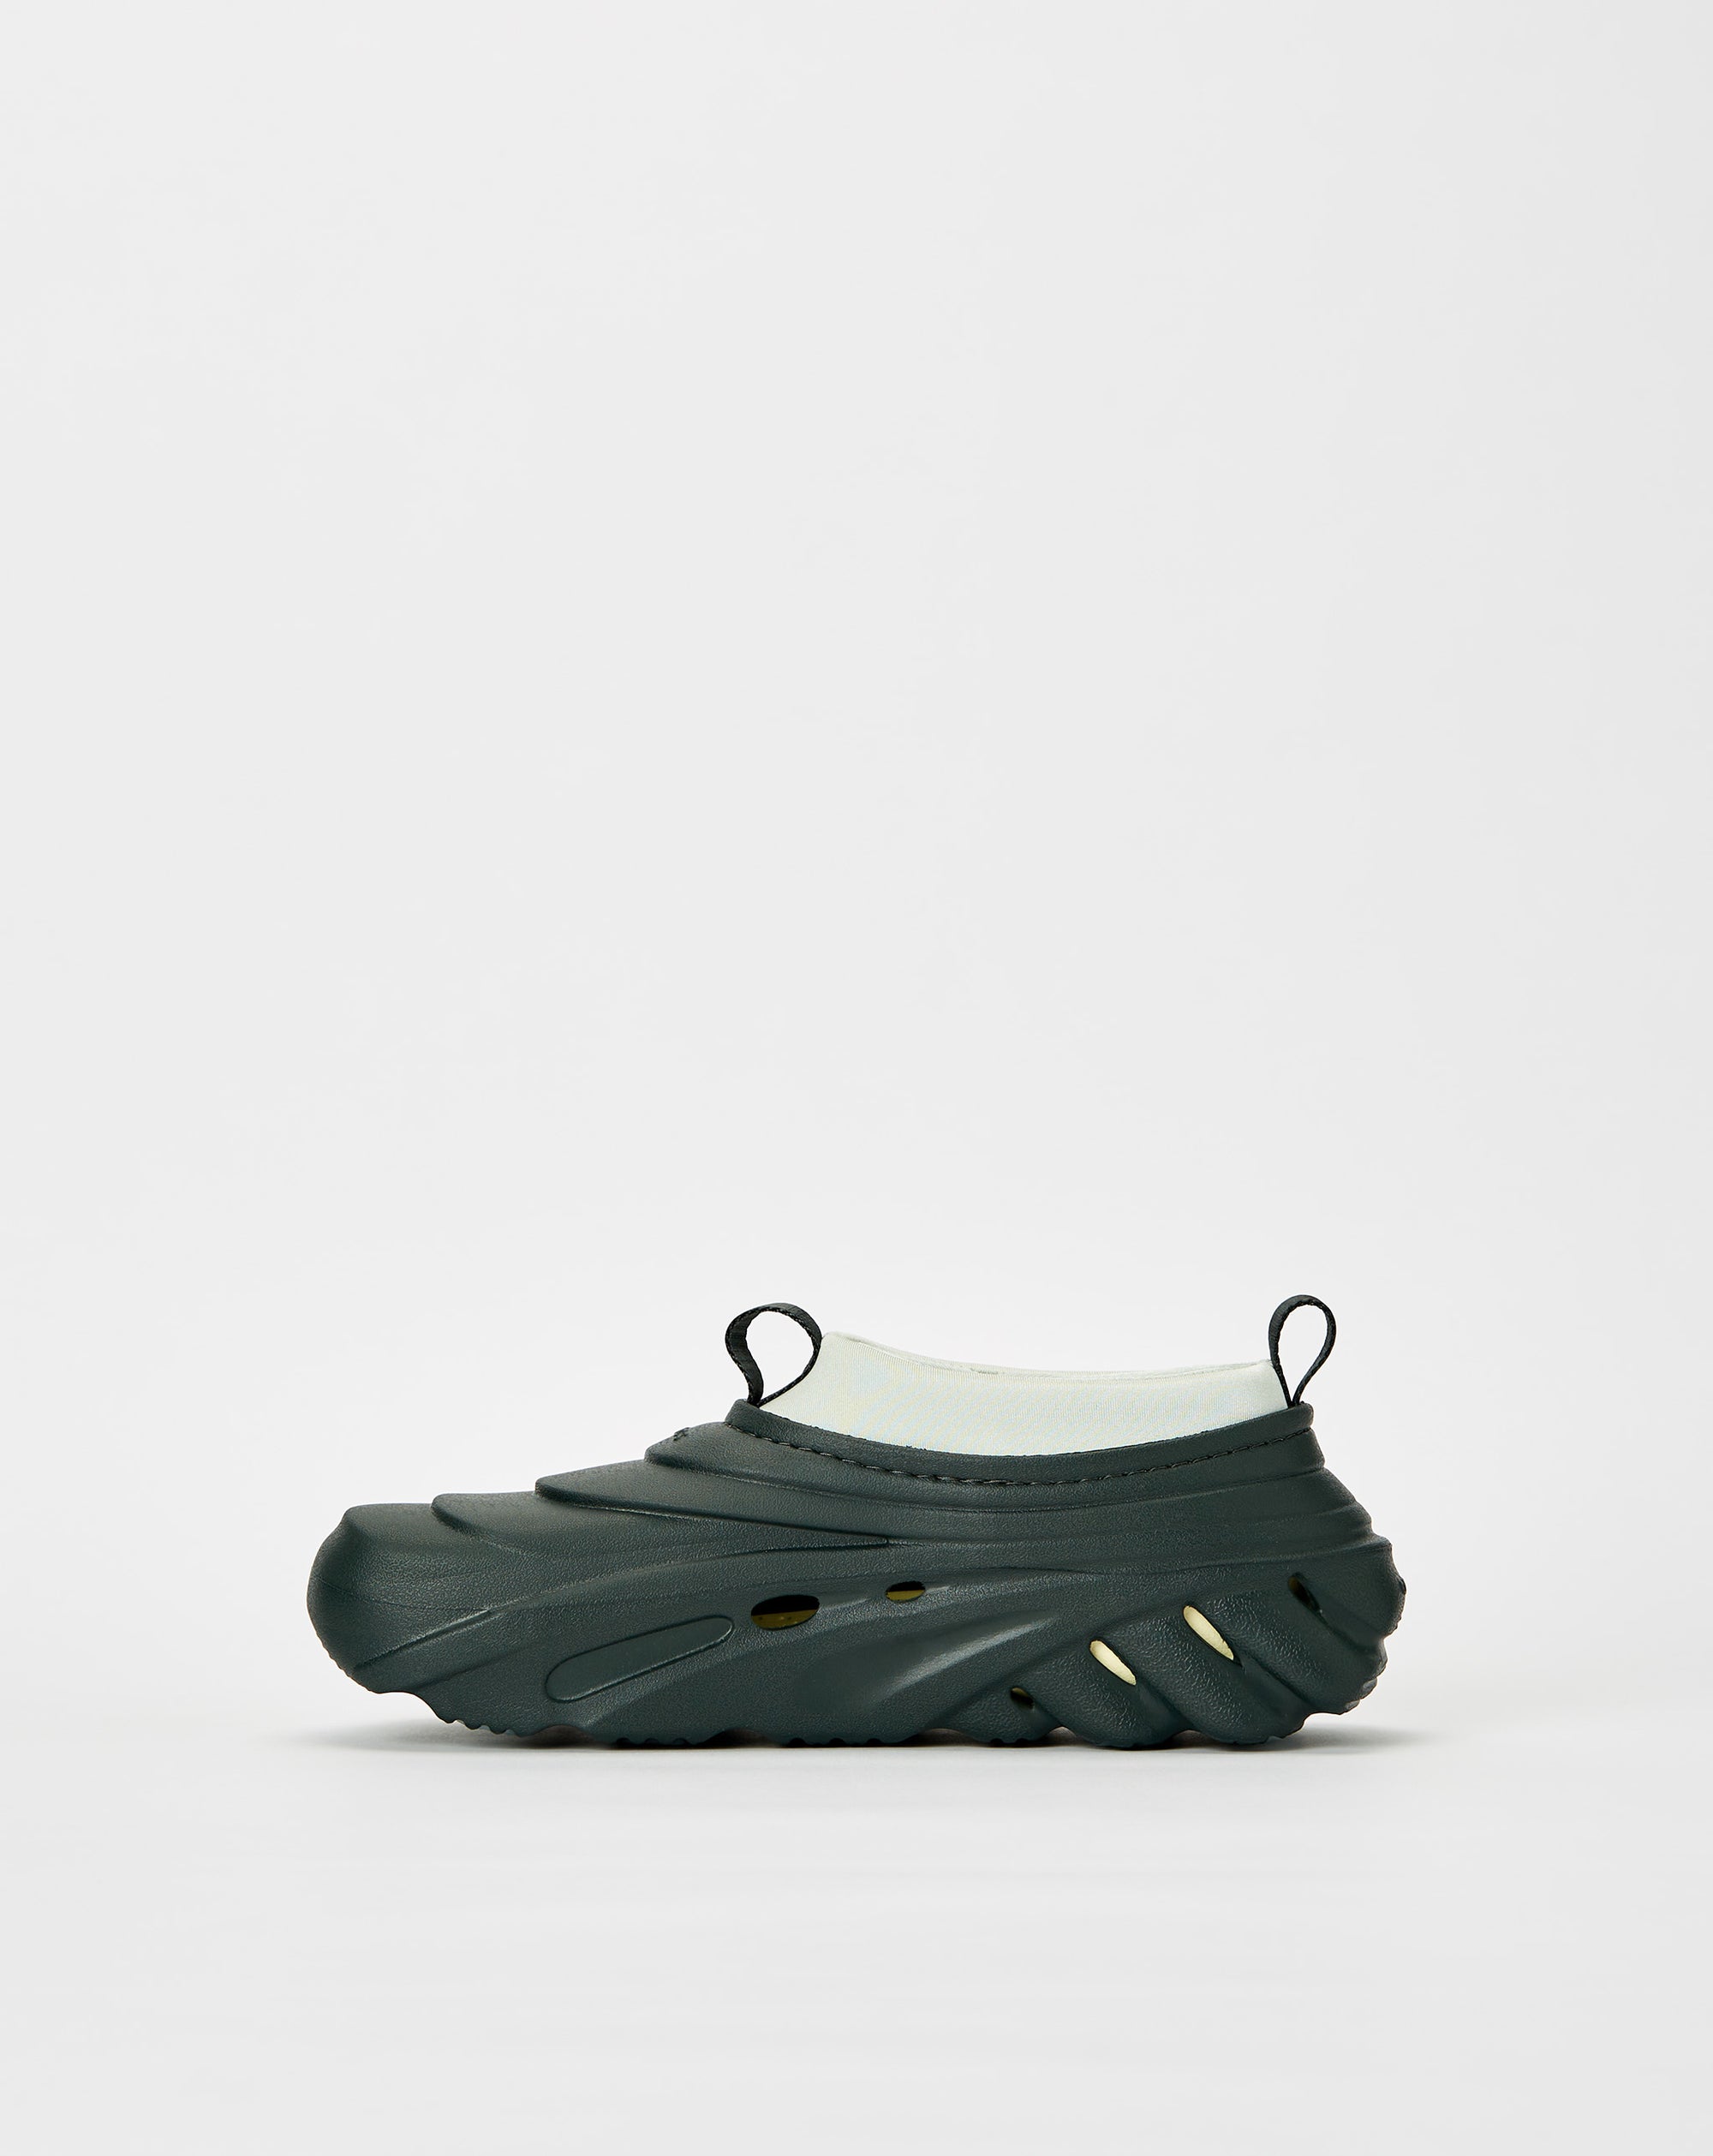 Crocs Echo Storm - Rule of Next Footwear